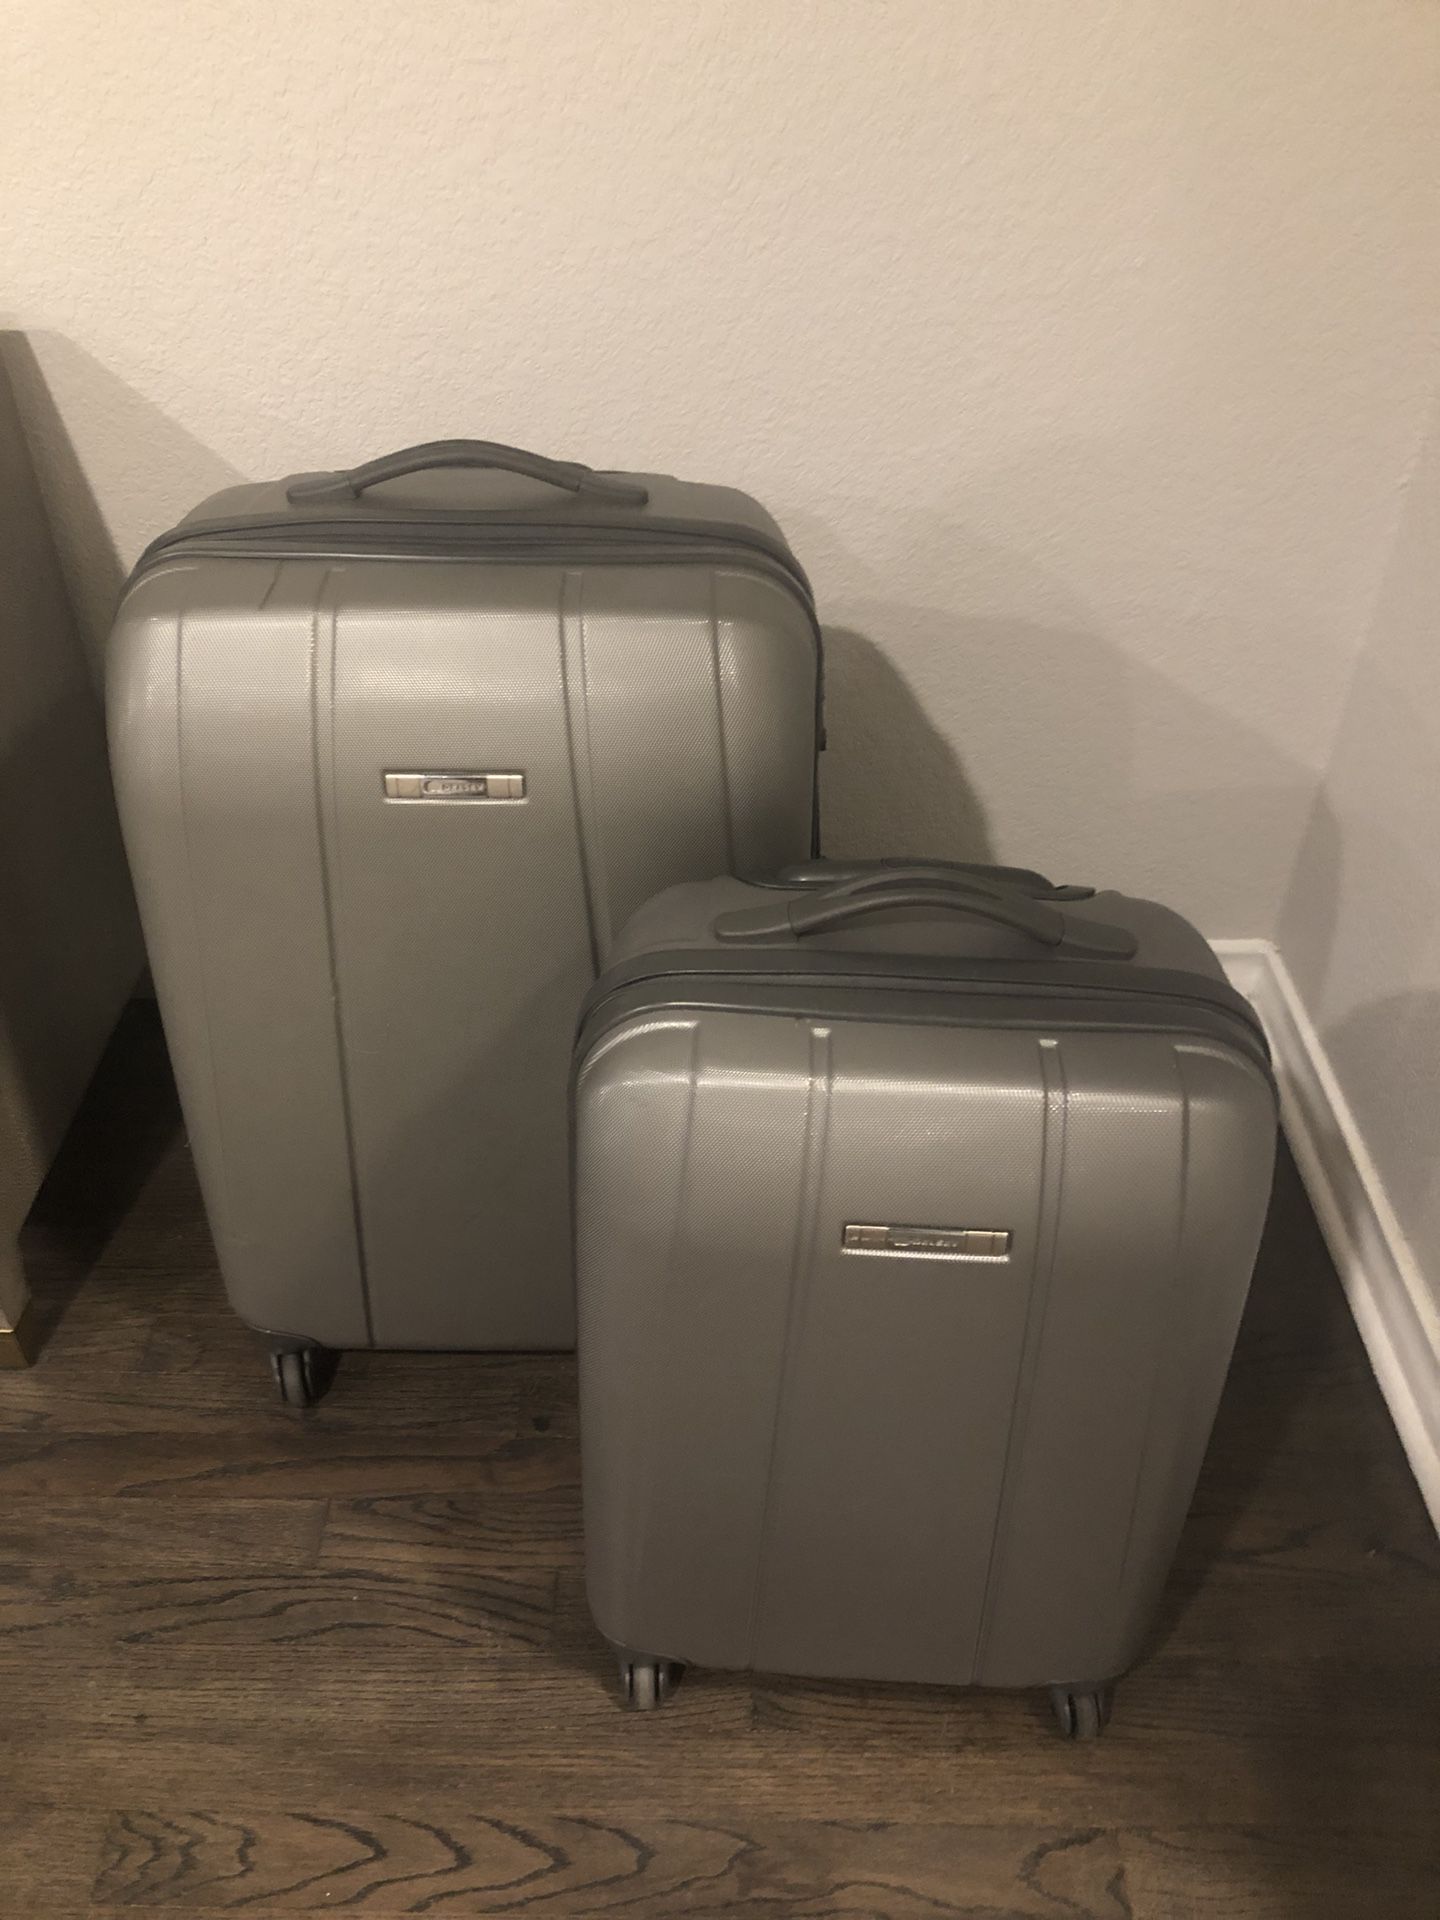 Hard case luggage set